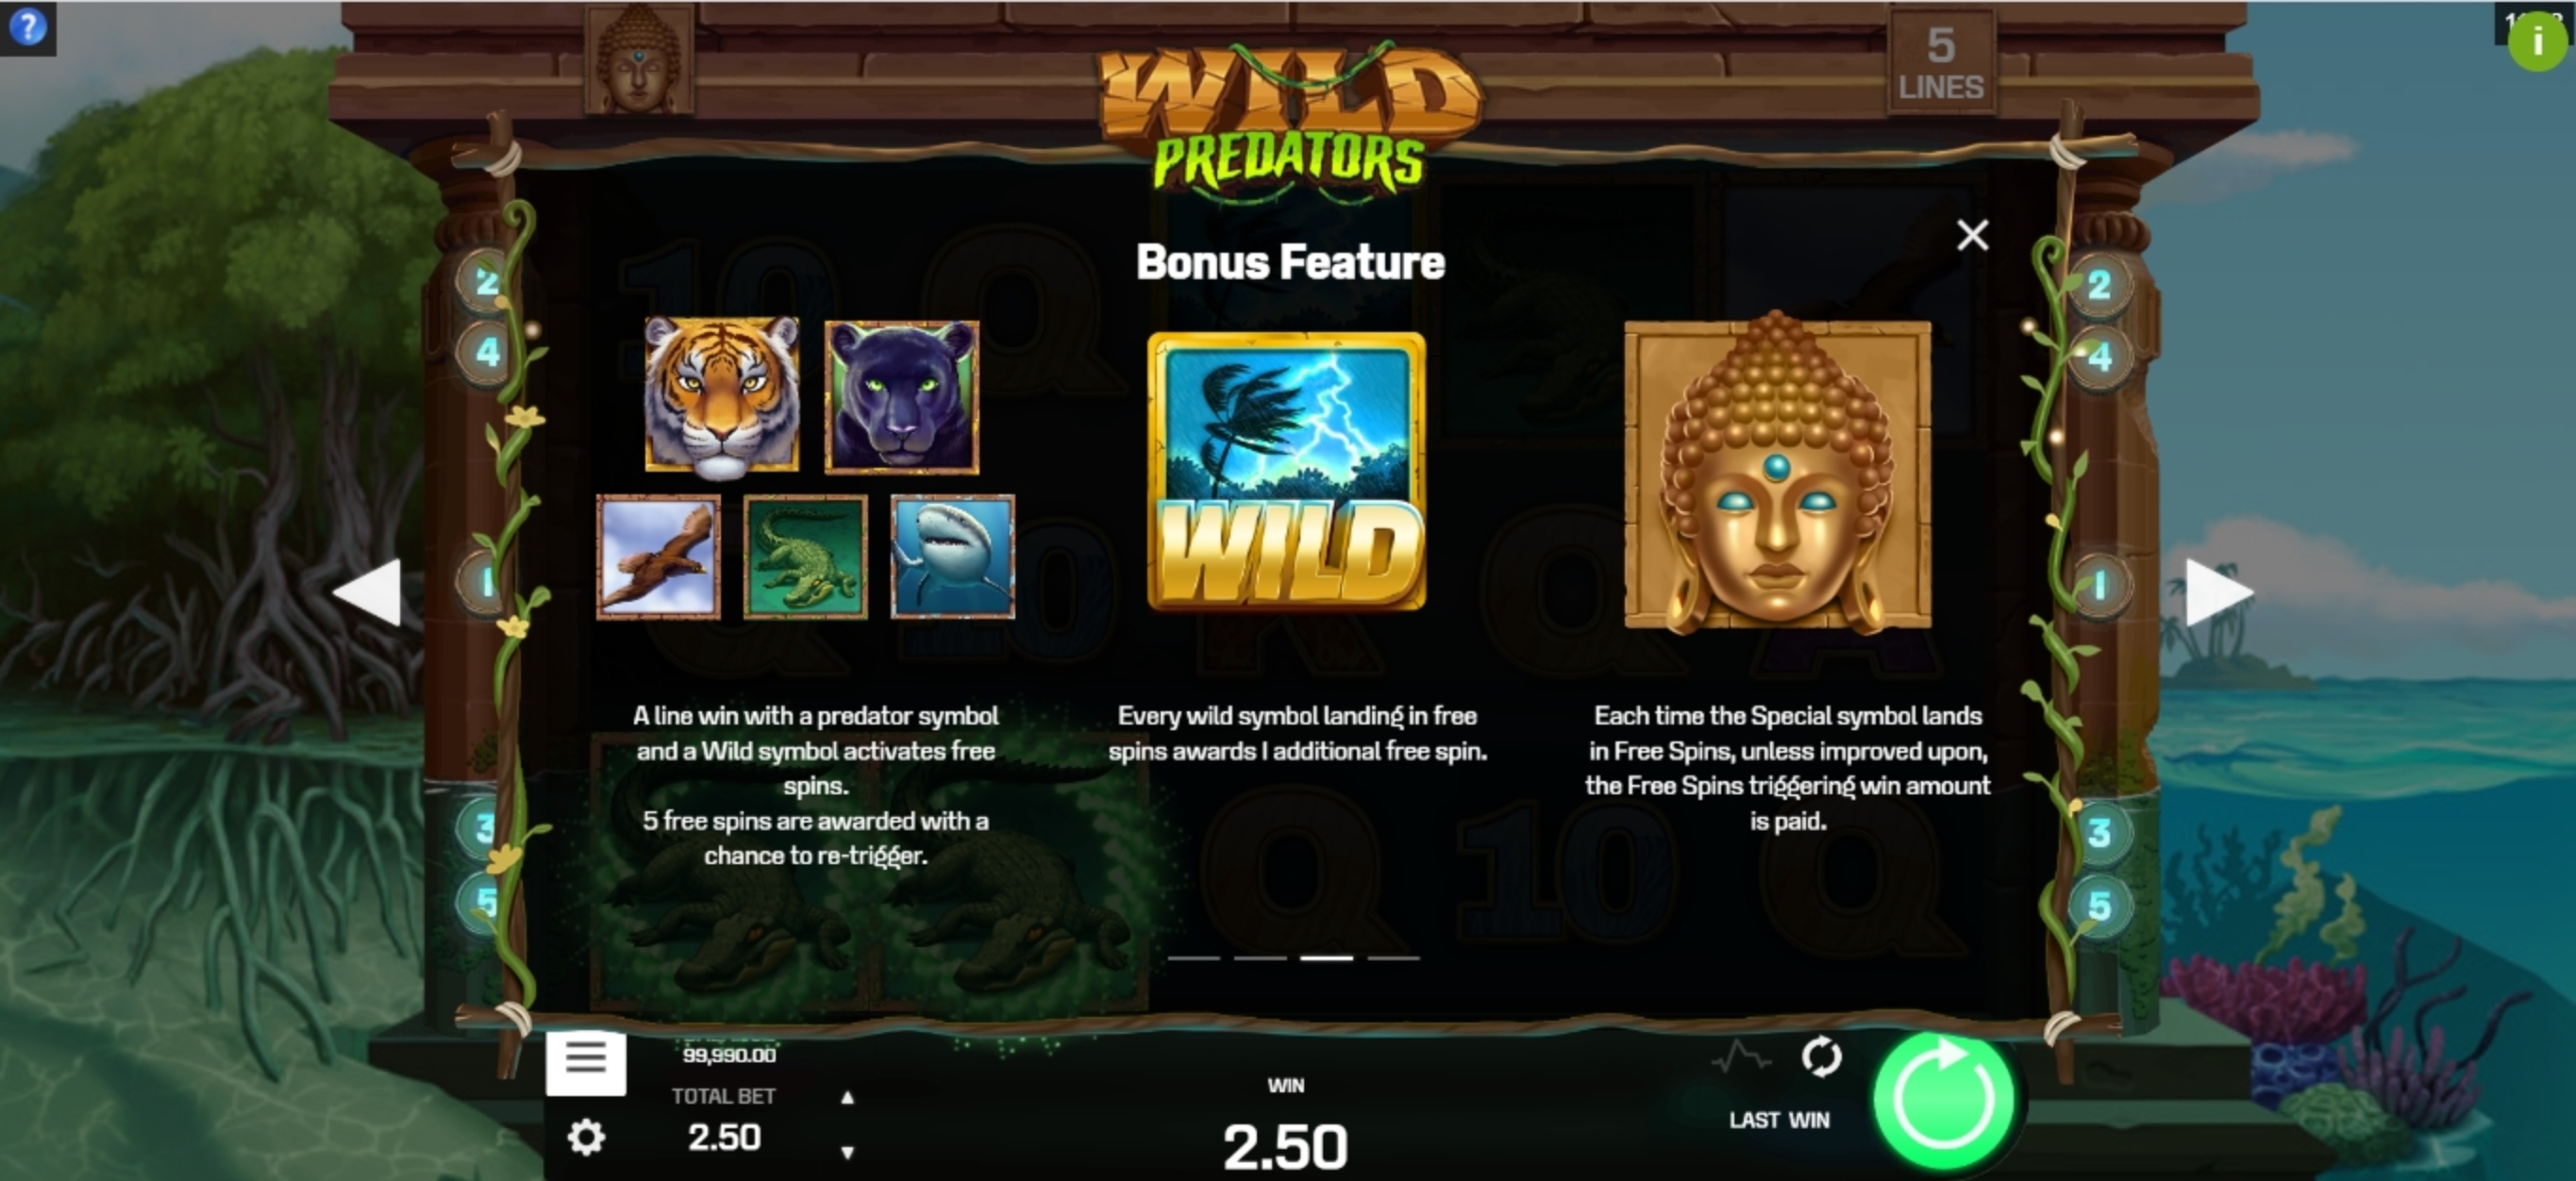 Info of Wild Predators Slot Game by Golden Rock Studios